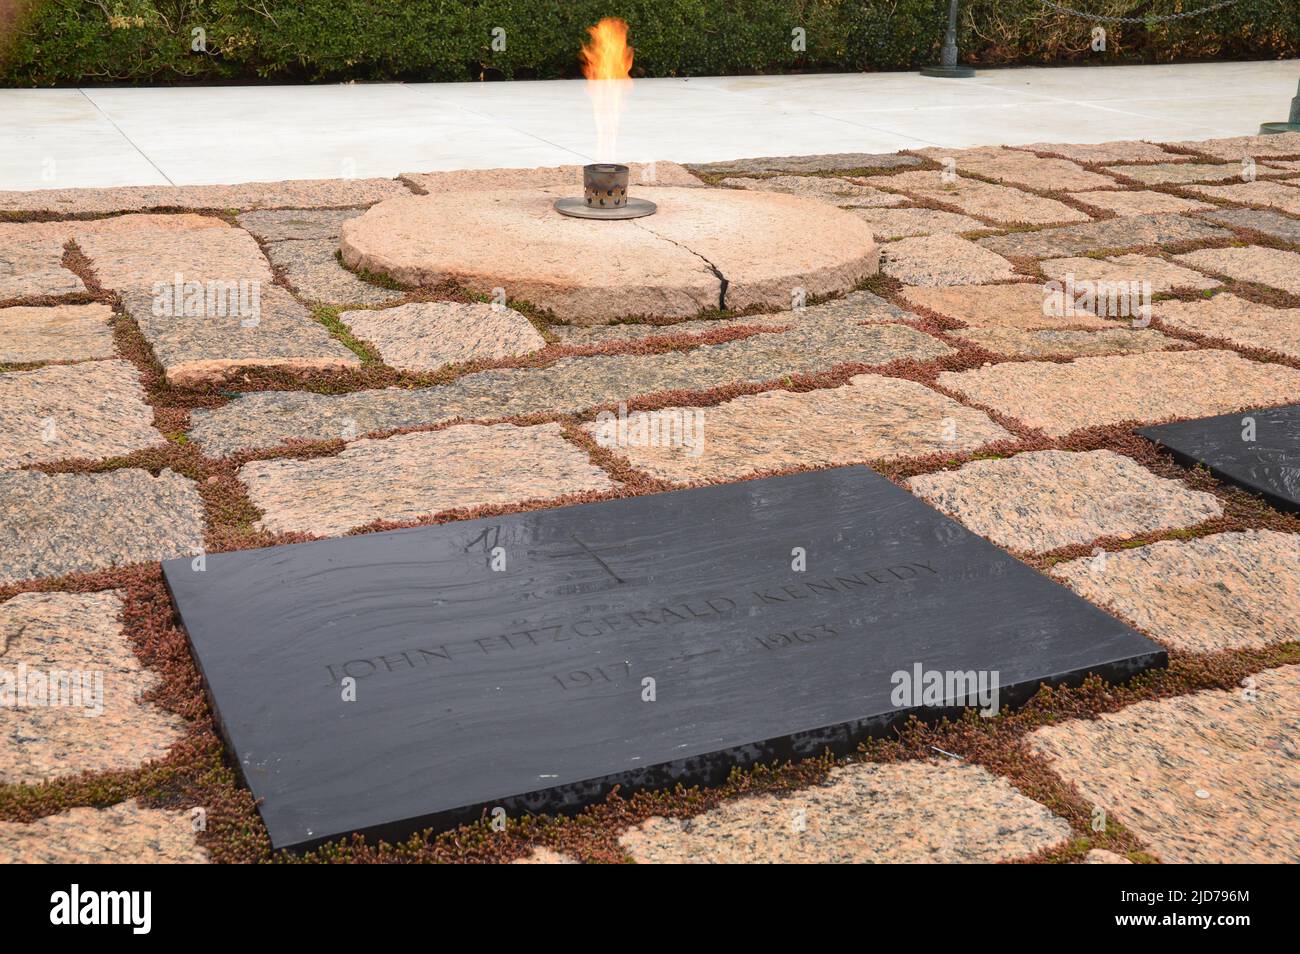 La flamme éternelle brûle continuellement la tombe de John F Kennedy dans le cimetière national d'Arlington Banque D'Images